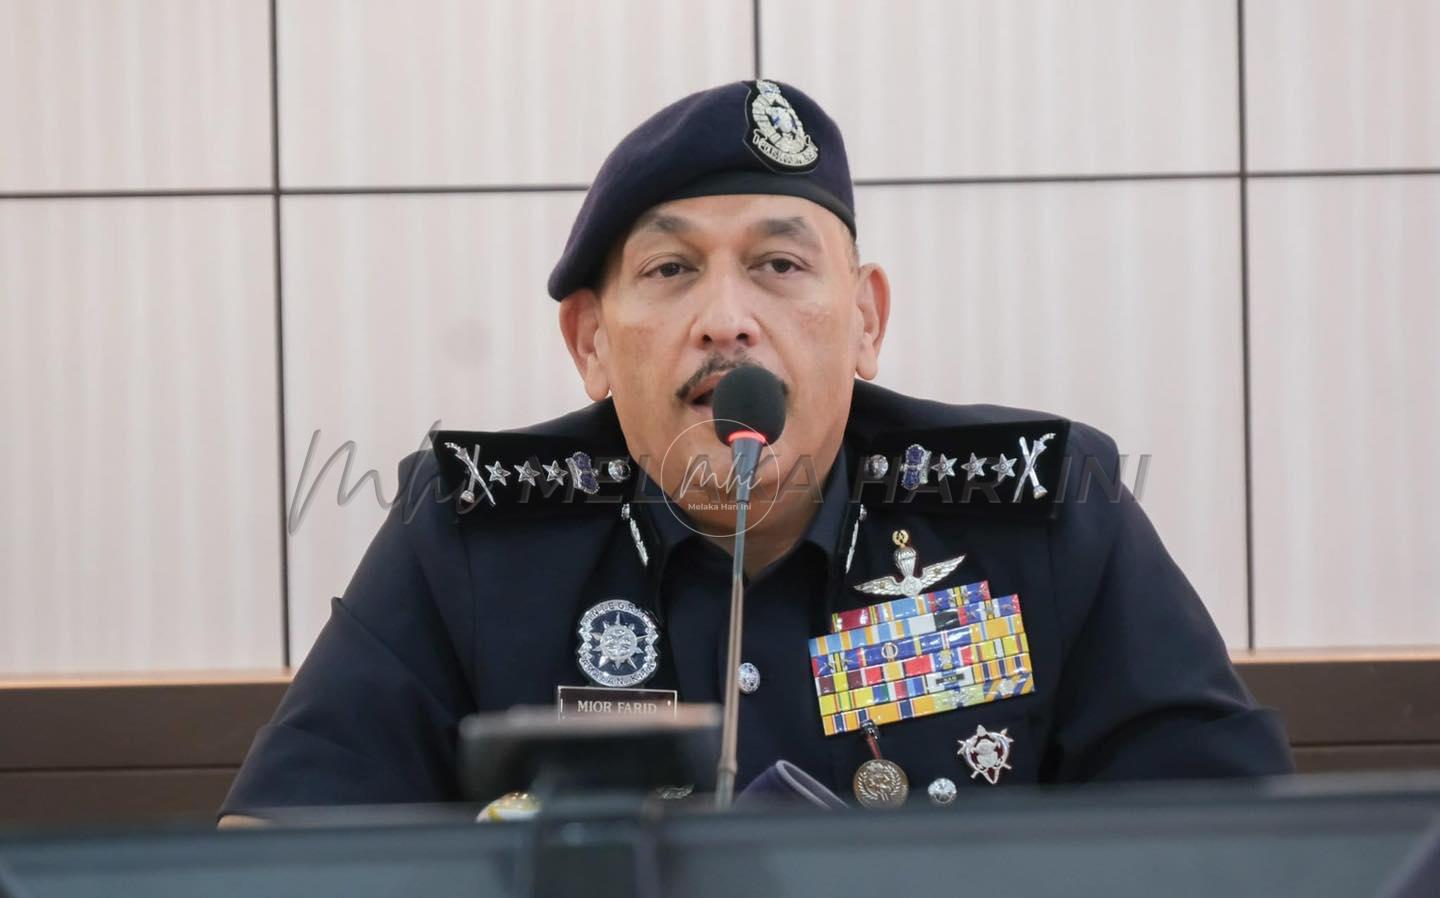 Polis tunggu arahan lanjut berhubung dua kes buli di Perak